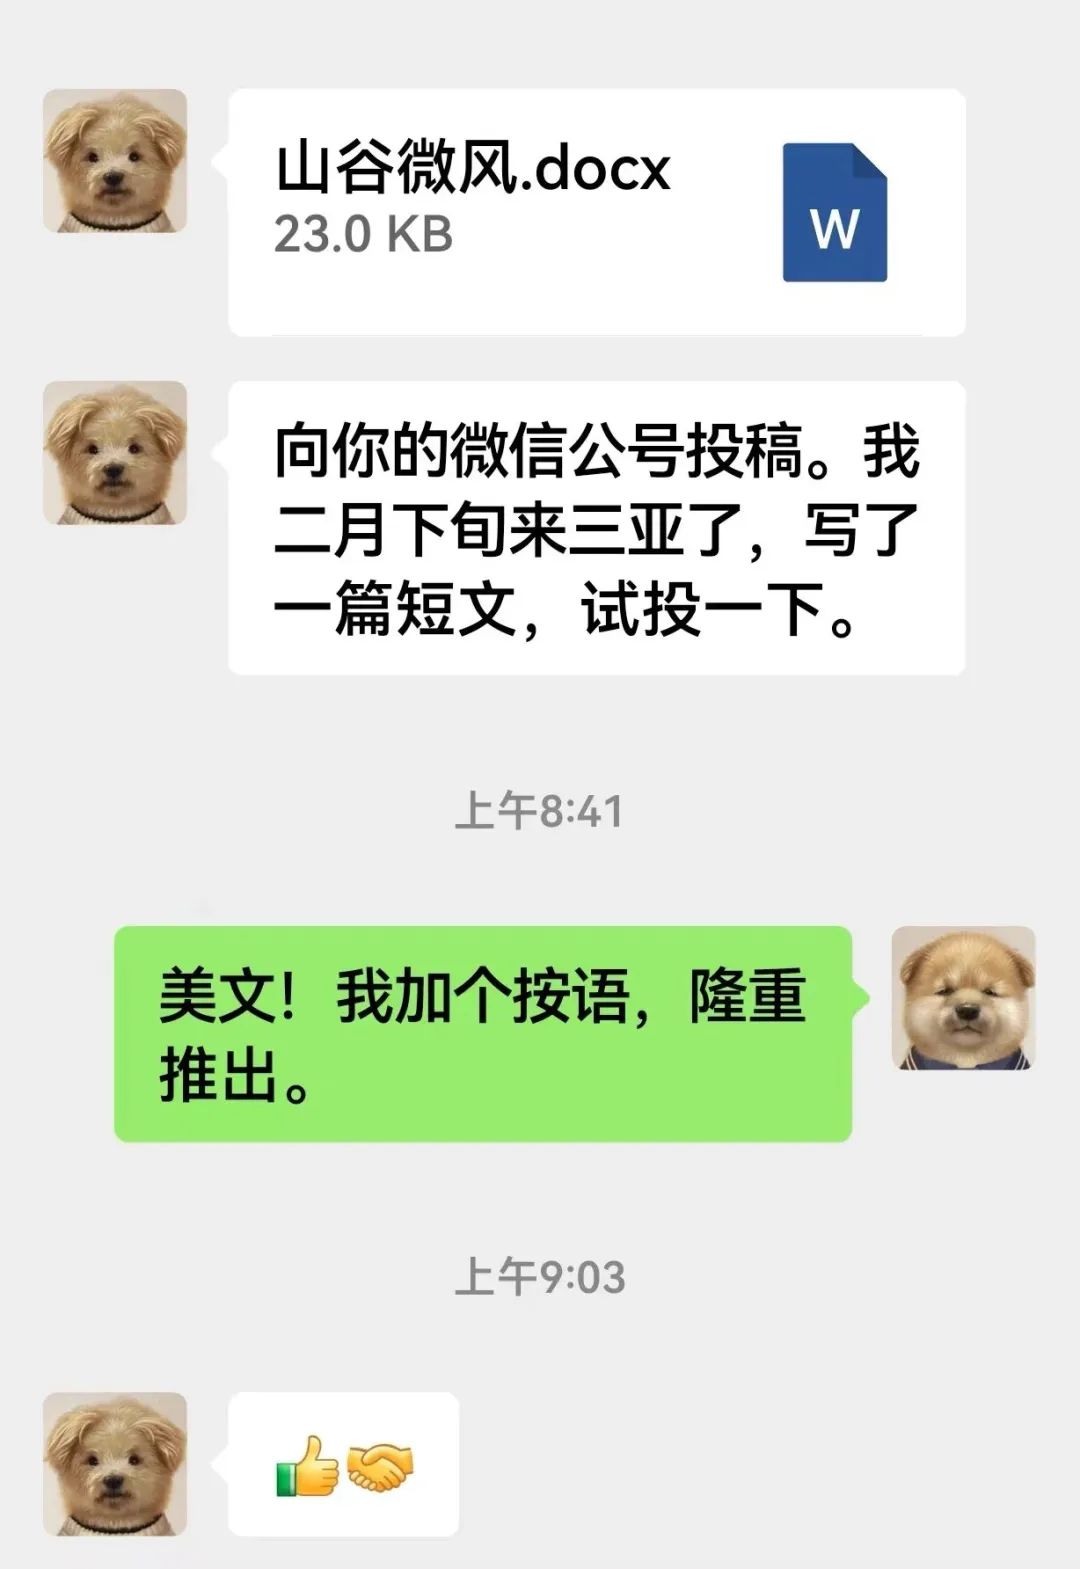 截图中，余华向莫言投稿了自己的散文。而受到网友关注的一个细节，则是两人微信的“潦草小狗”头像。